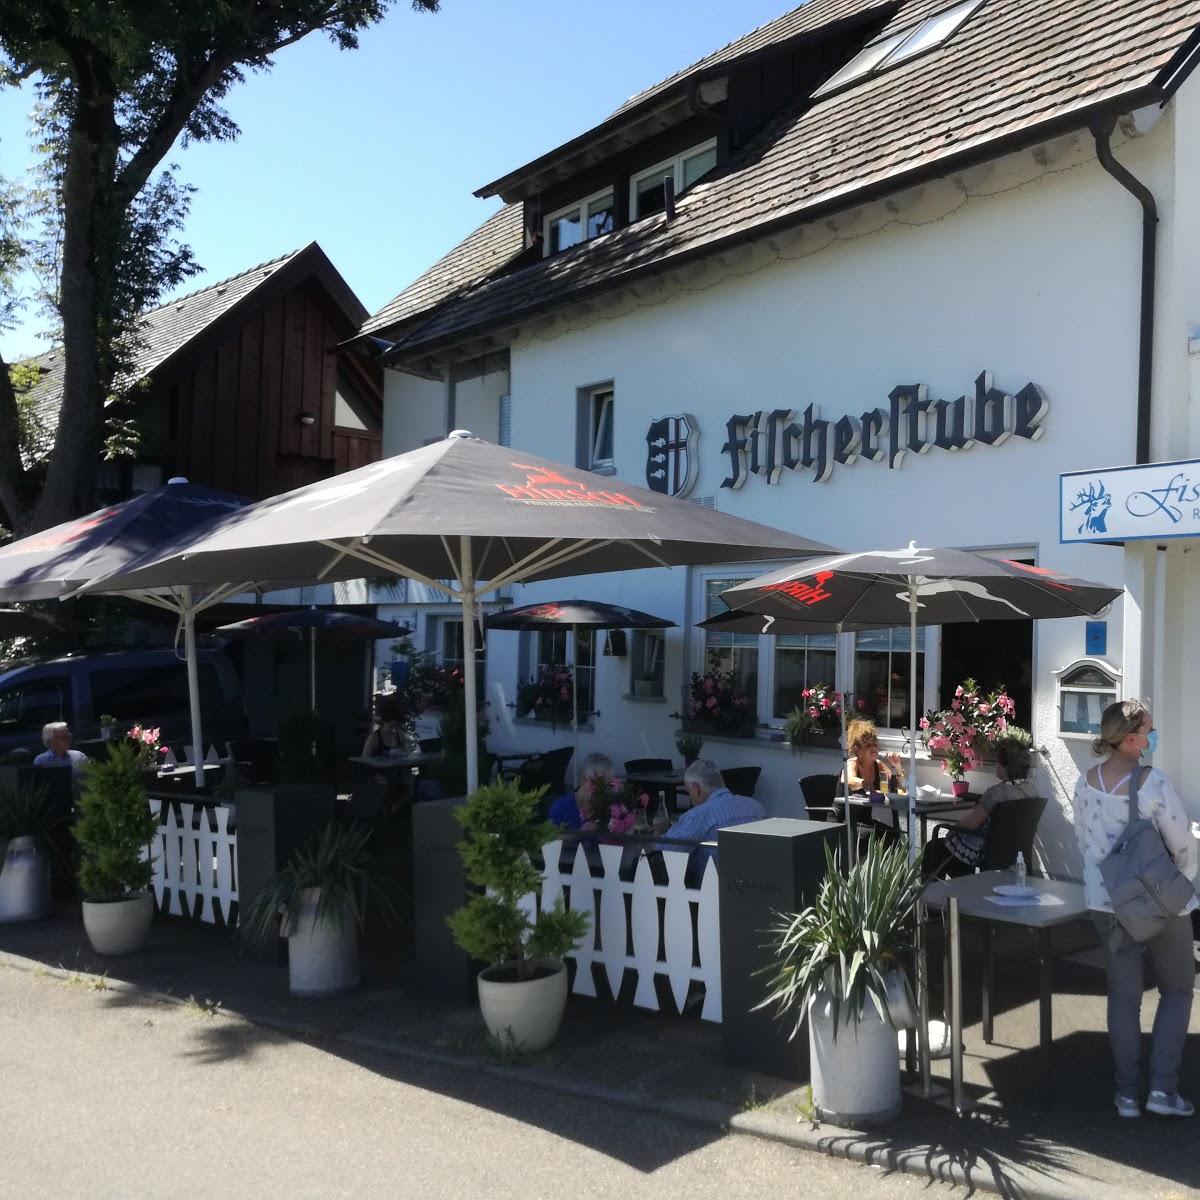 Restaurant "Heikos Hendlwagen" in  Allensbach